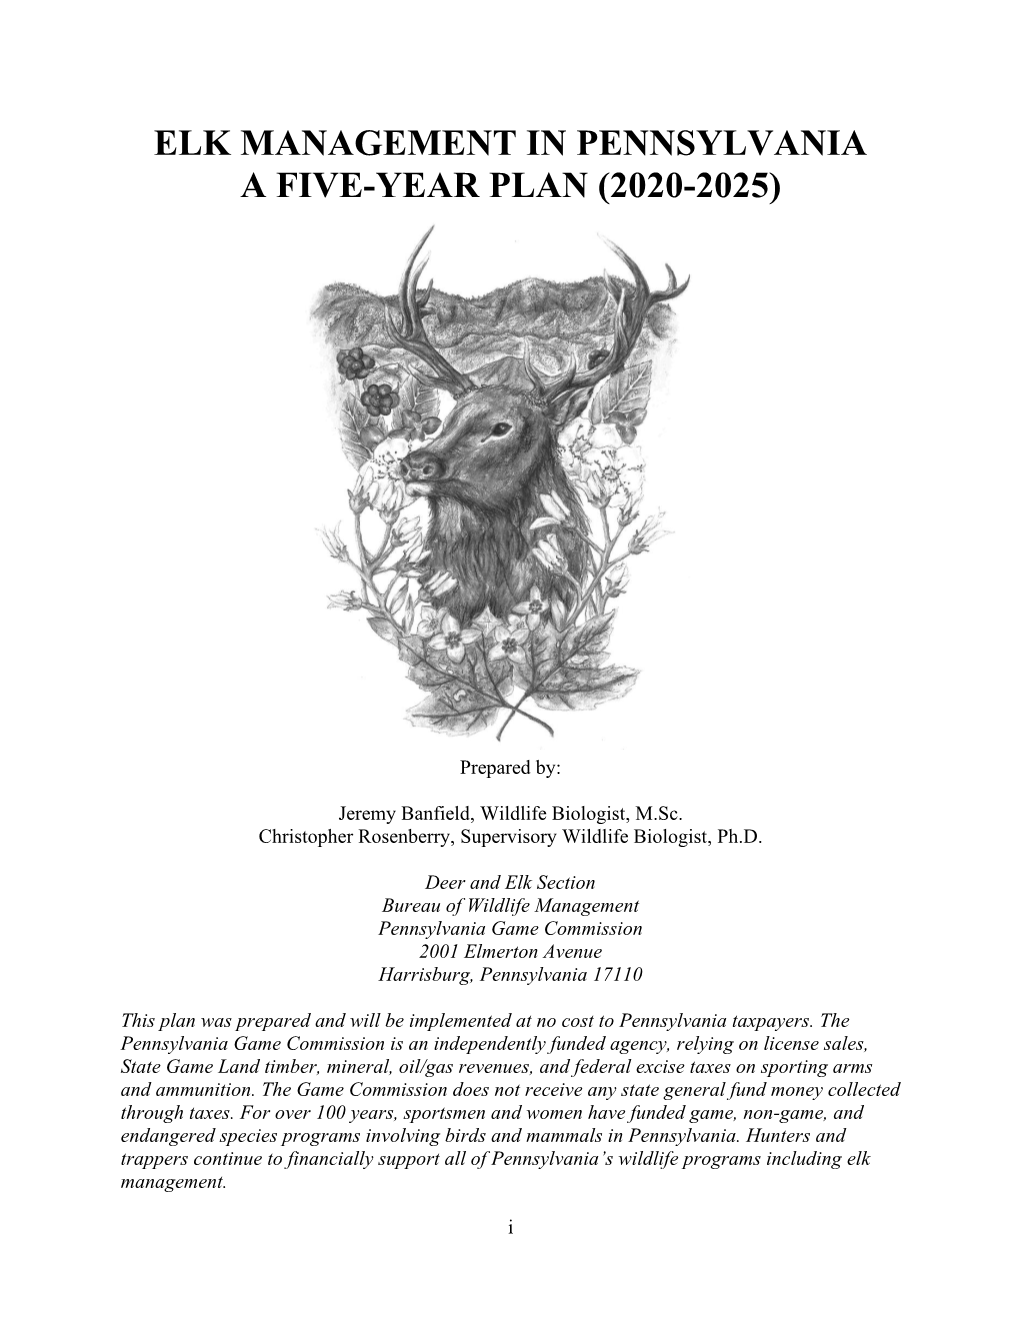 Elk Management Plan 2020-2025